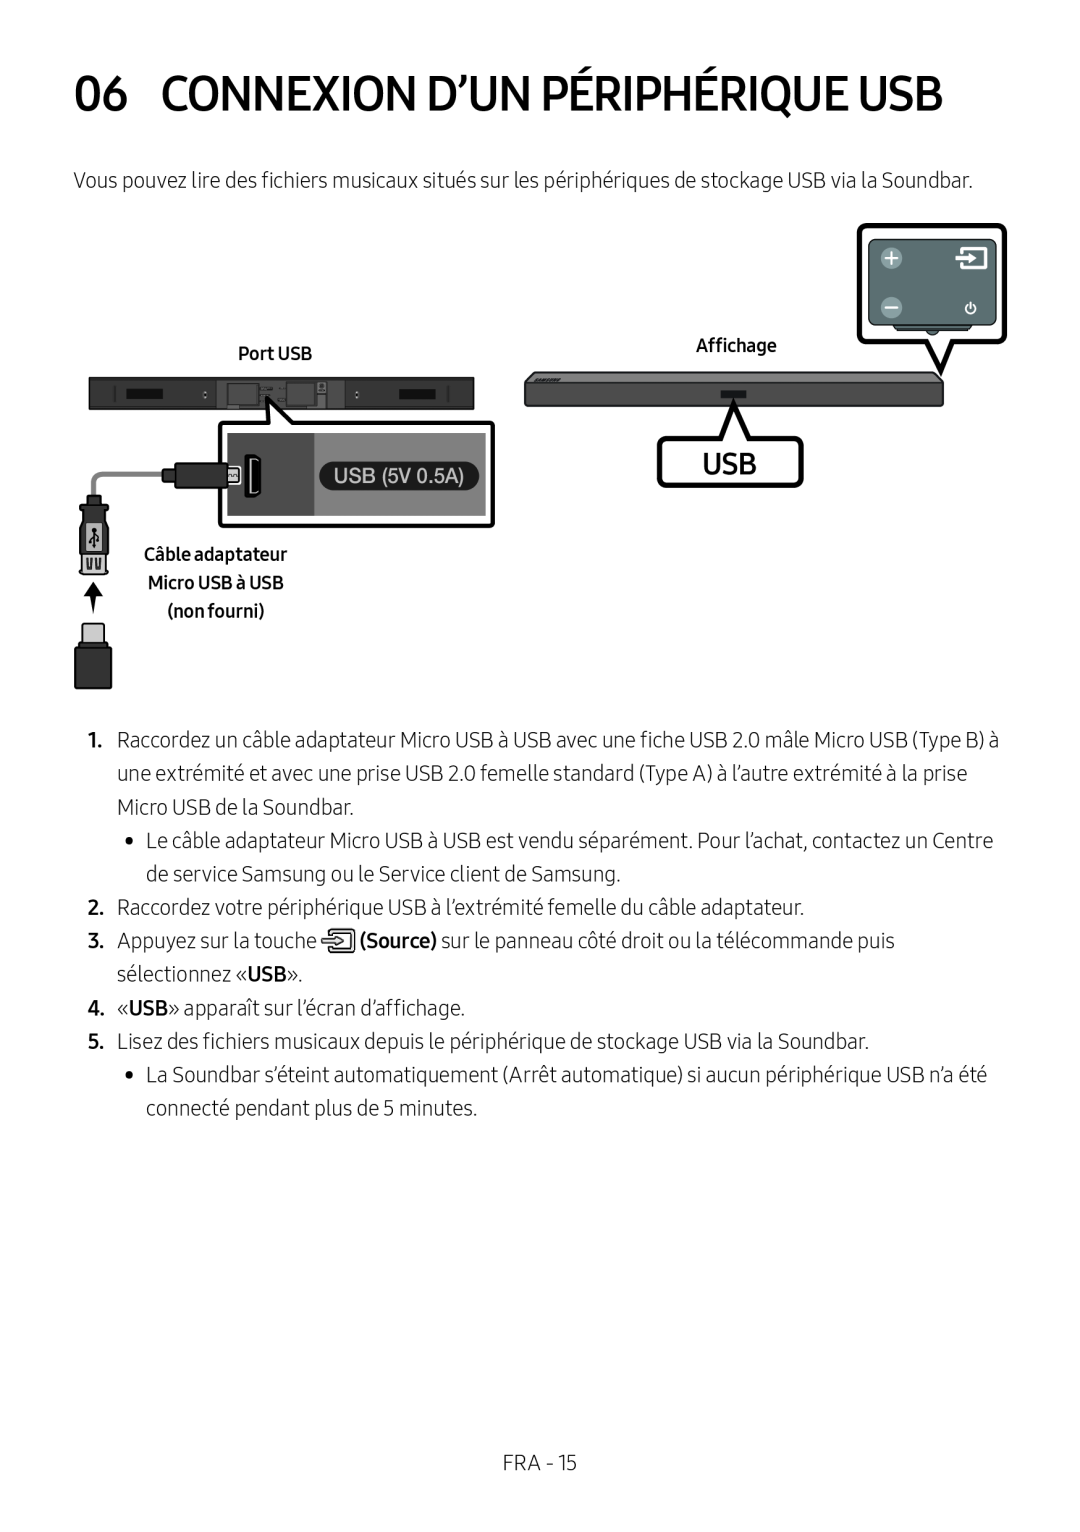 Samsung HW-M450/ZF, HW-M450/EN Connexion D’Un Périphérique Usb, USB 5V 0.5A, Câble adaptateur Micro USB à USB non fourni 